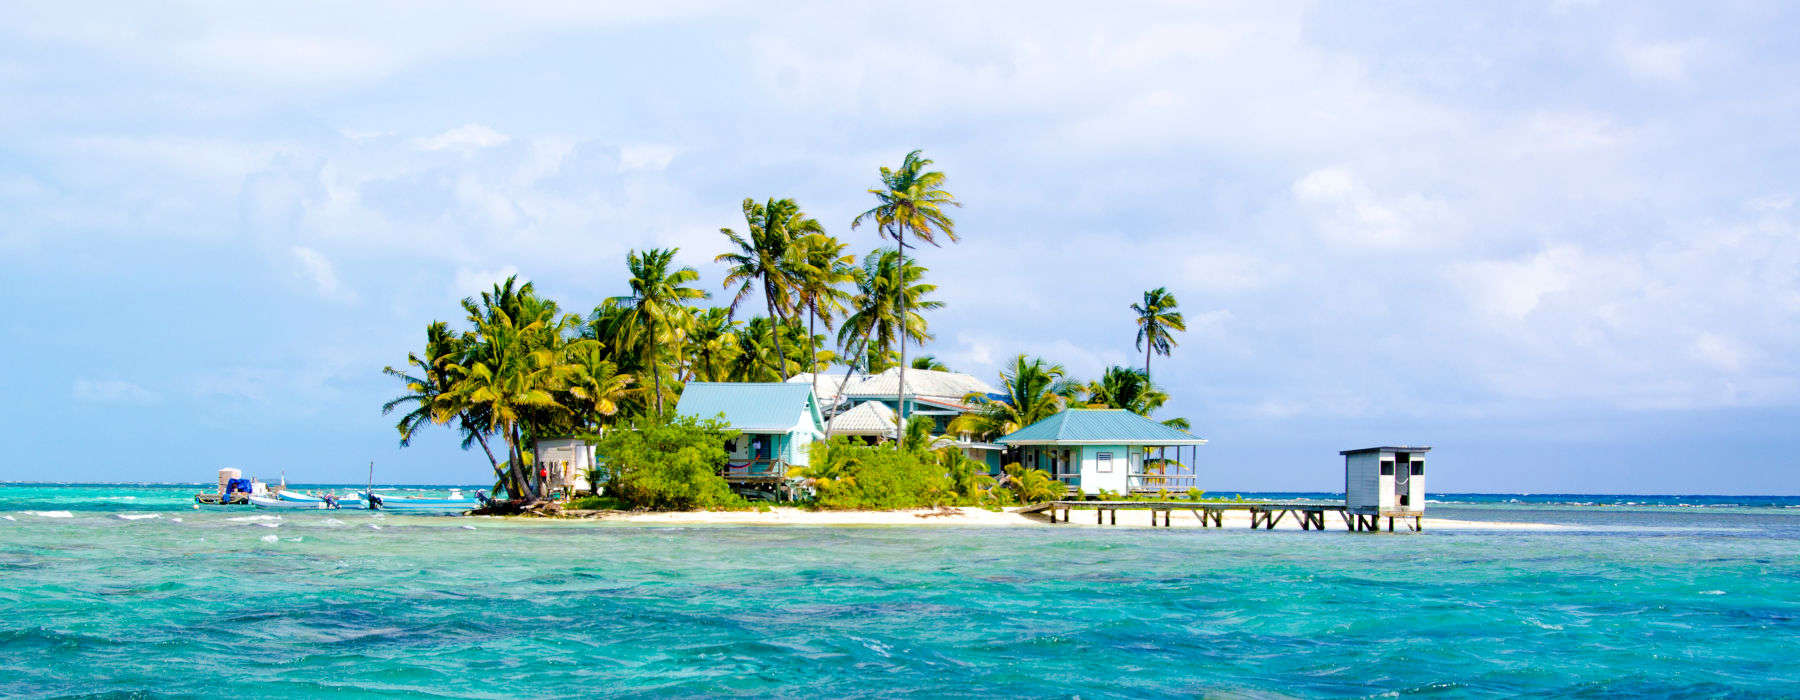 The Belizean Coast<br class="hidden-md hidden-lg" /> Holidays